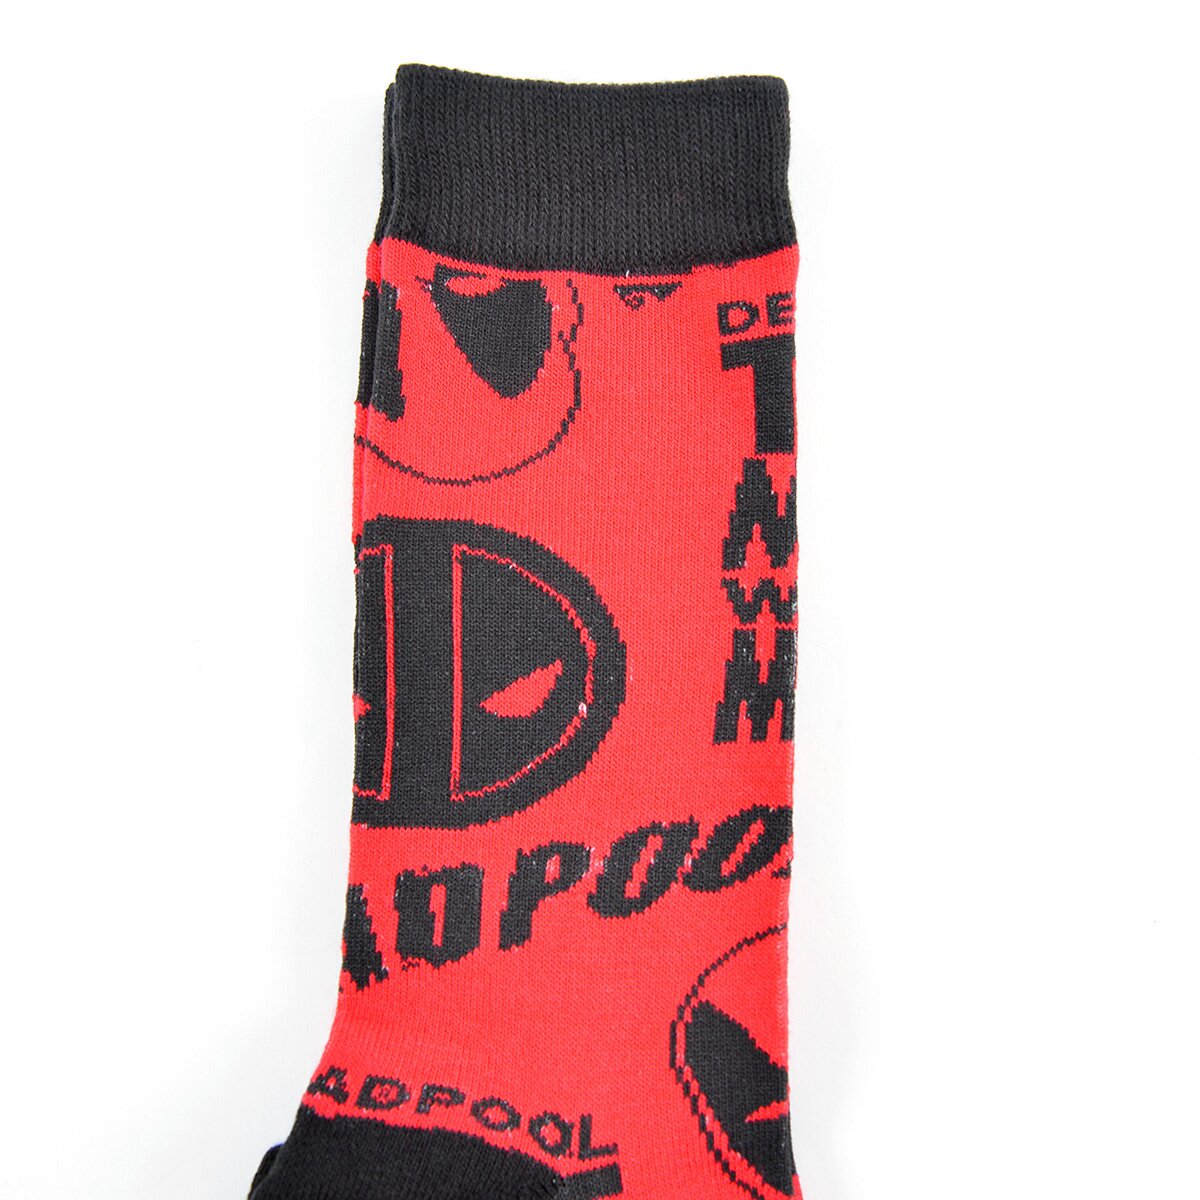 Marvel Deadpool All-Over Print Crew Socks - Tokyo Otaku Mode (TOM)